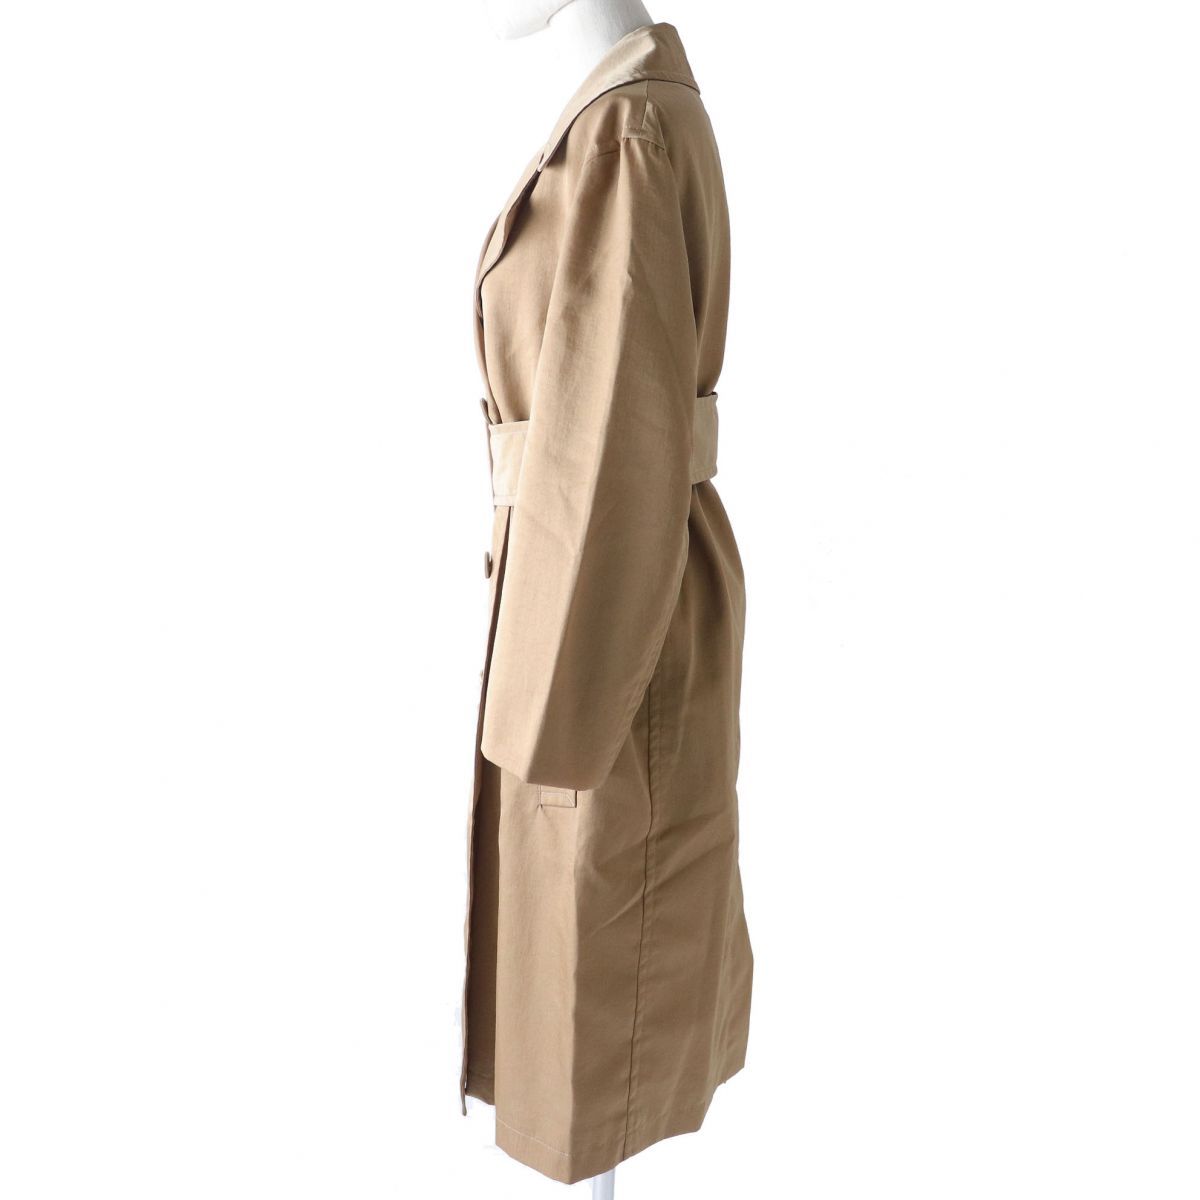 Maison Margiela belted coat 36サイズベルテッドコートベルトコート